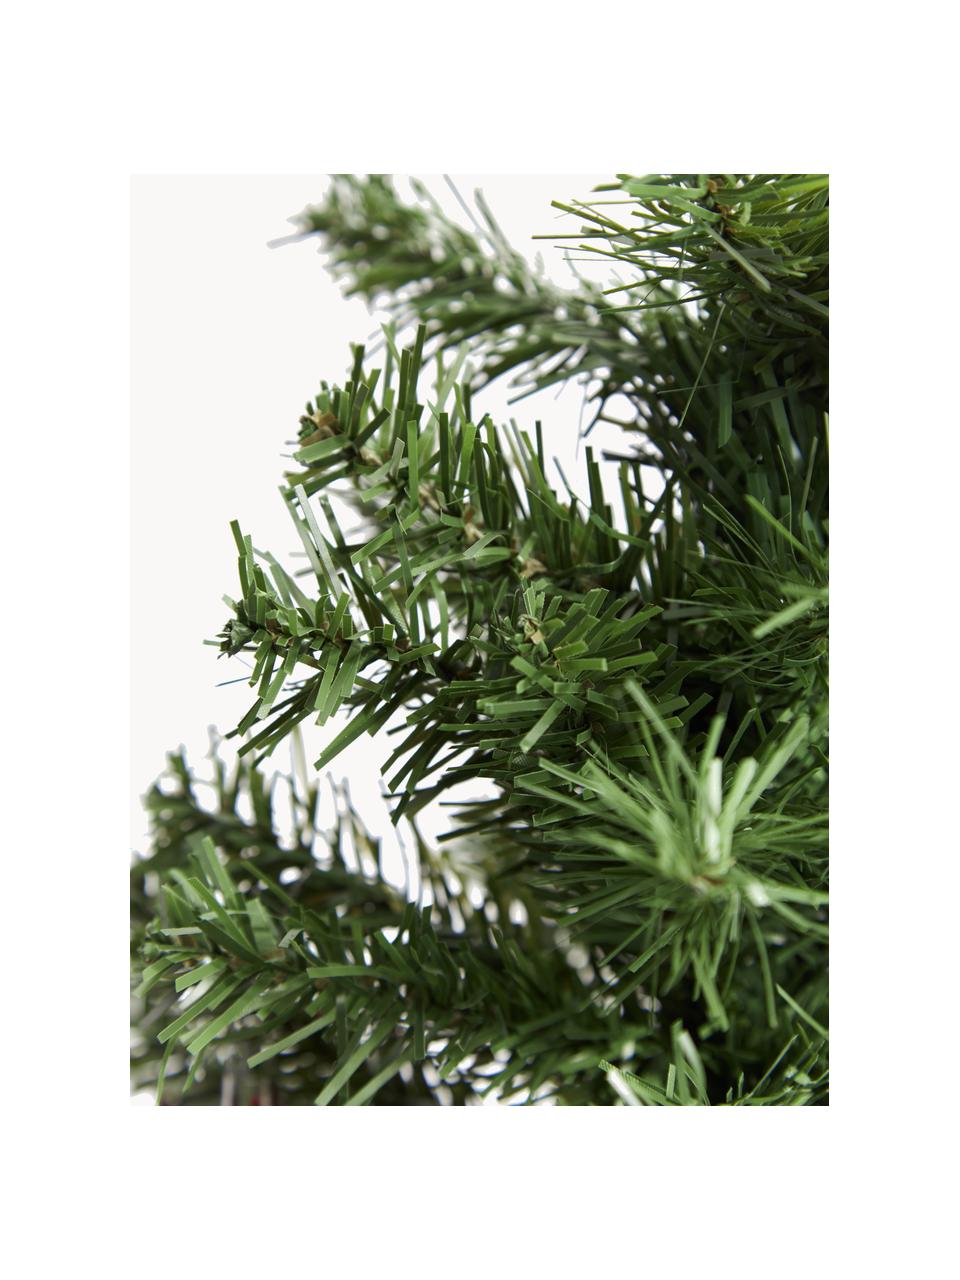 Sada umělého vánočního stromku s ozdobami Imperial, 21 dílů, Umělá hmota, Tmavě zelená, červená, bílá, Ø 41 cm, V 75 cm